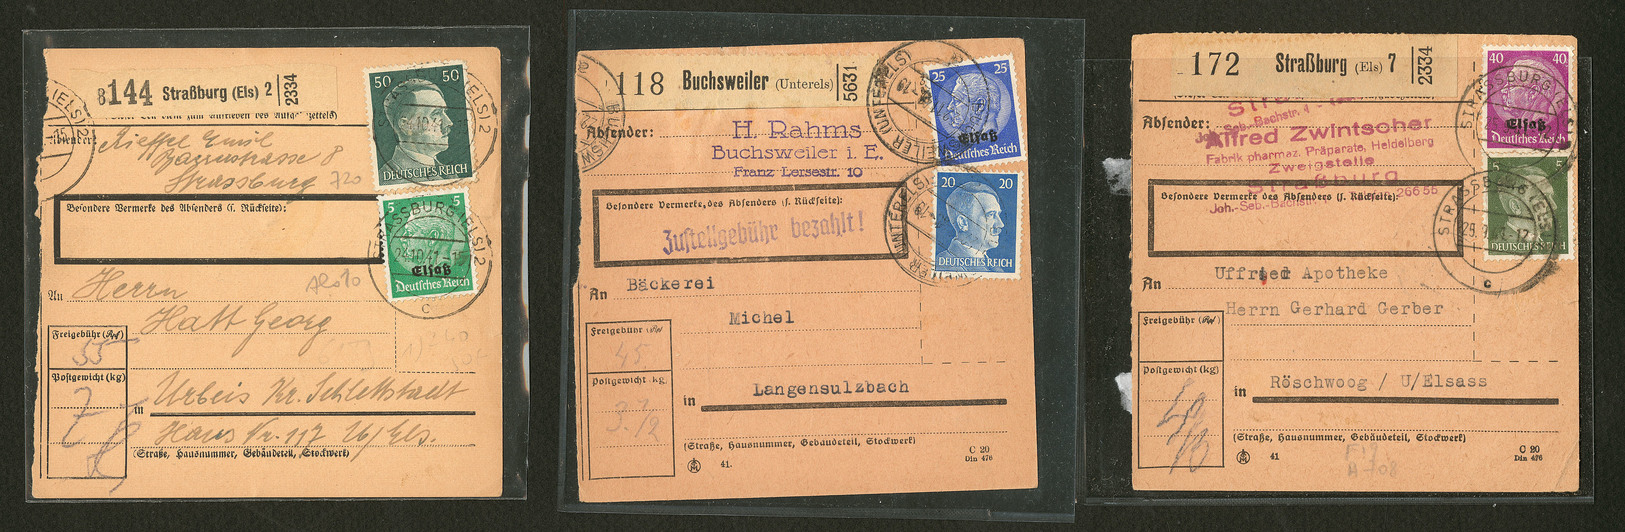 LETTRE ALSACE 1940. Colis Postaux. 3 Bulletins D'expédition Oct/Nov 41 Avec Afft Mixte All/Elsass. - TB - War Stamps